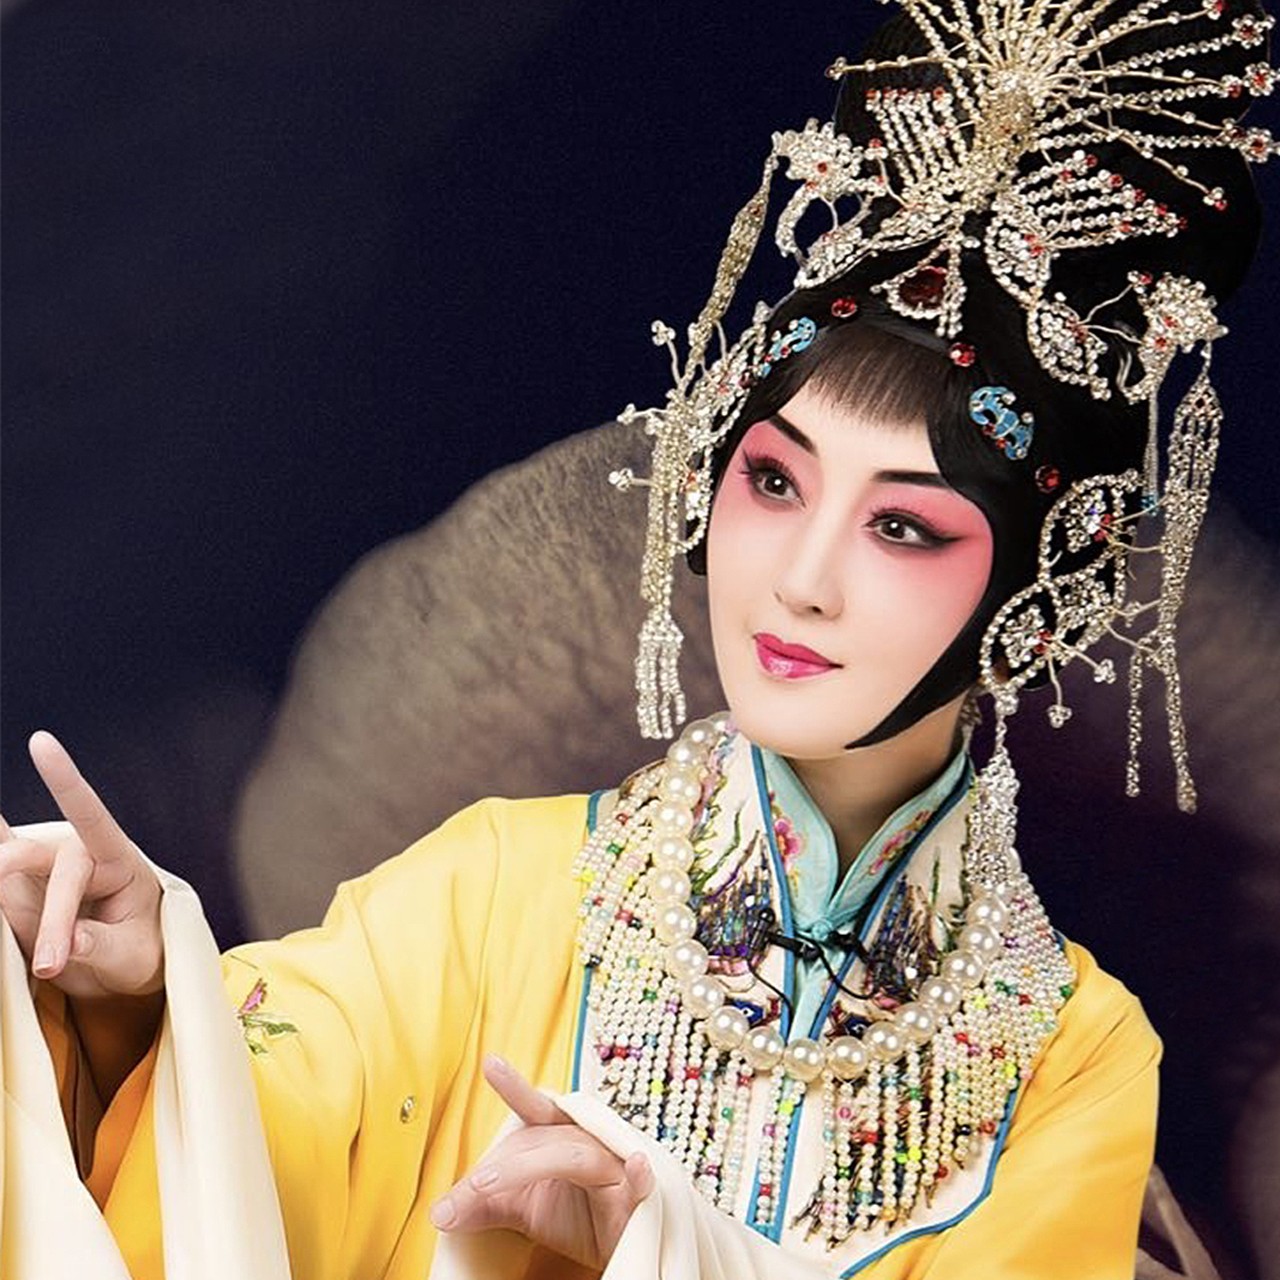 杨钰莹扮杨玉环唱梅派京剧,古今两代绝色美人穿越时空的完美融合